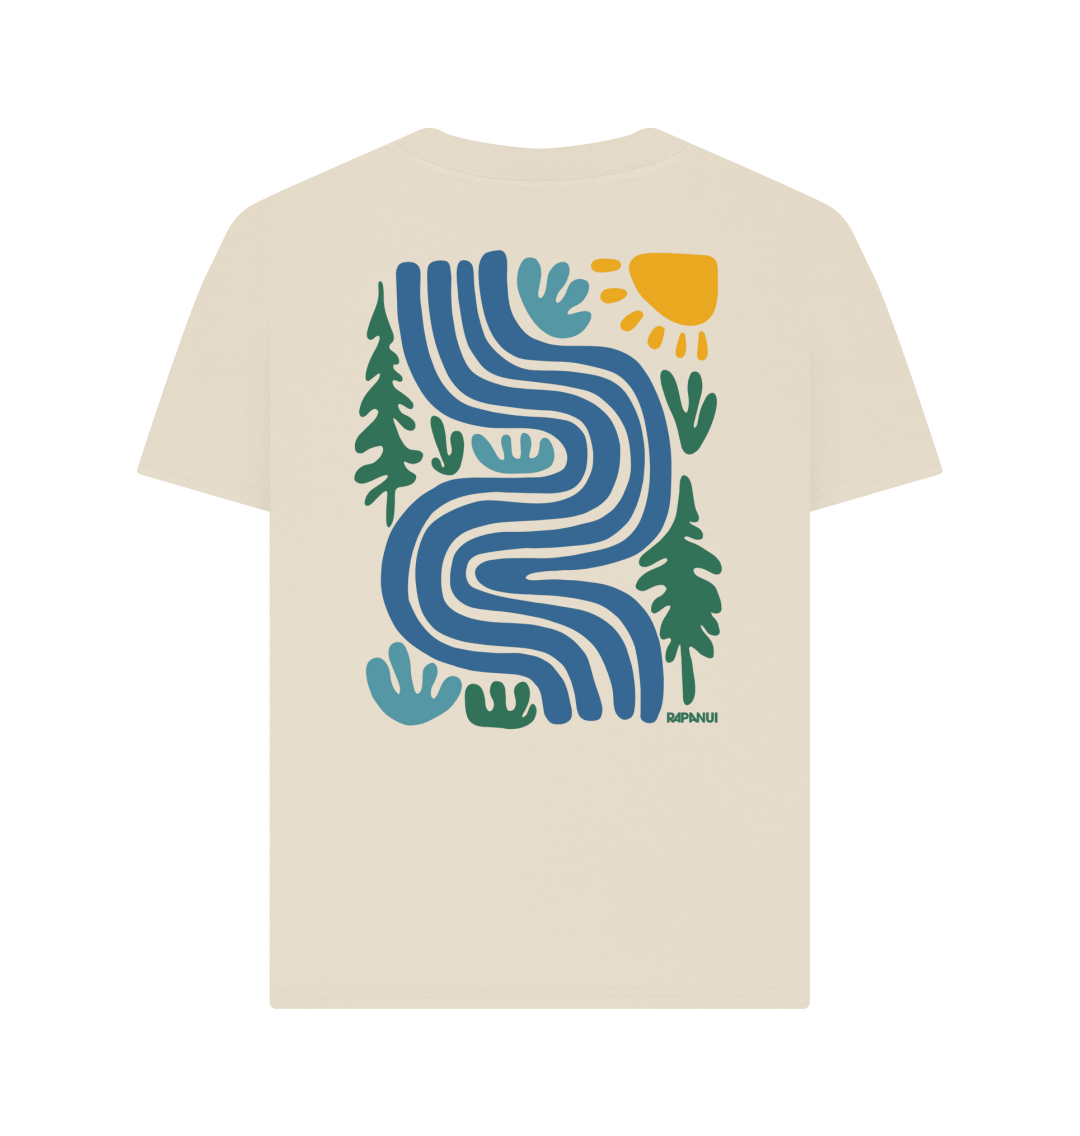 Rivers T - Shirt - Printed T - shirt